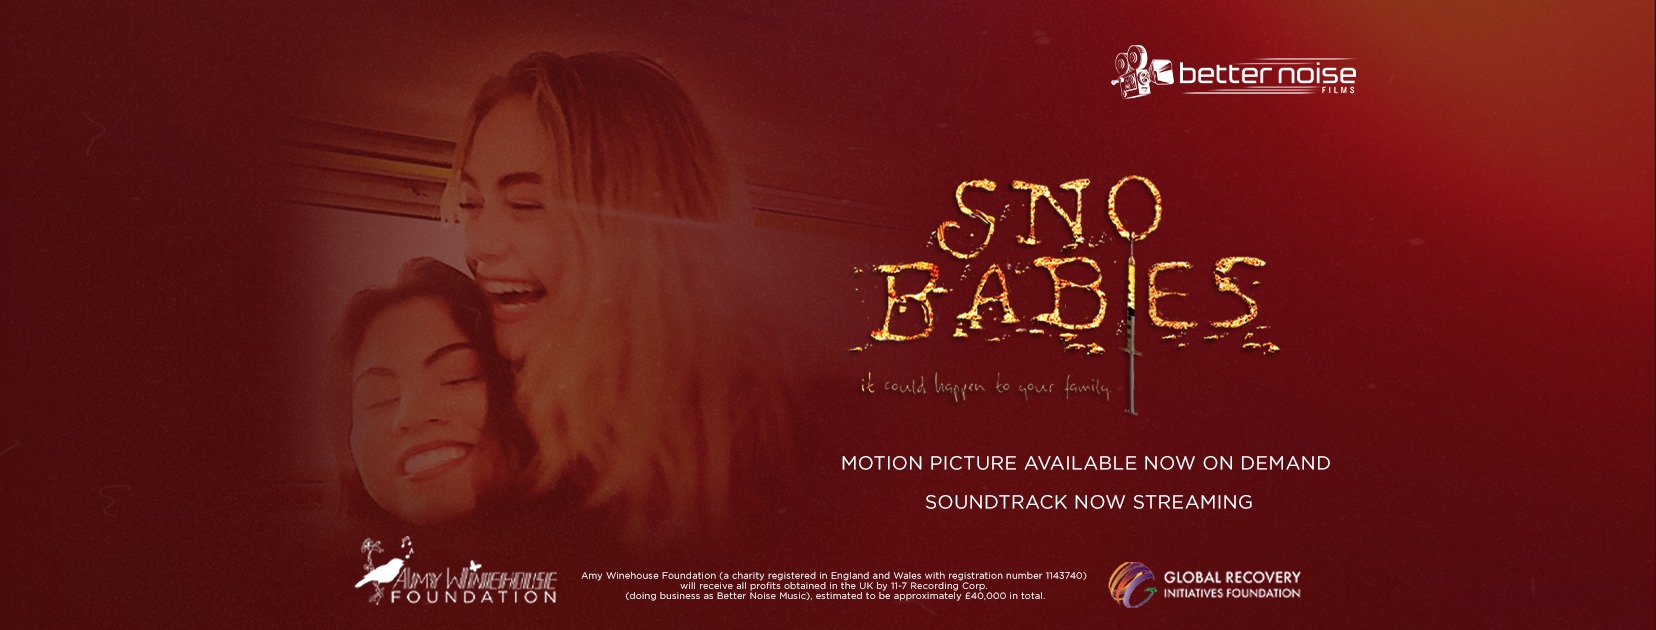 SNO BABIES – il film debutta oggi in America e Regno Unito – presto disponibile in tutta Europa